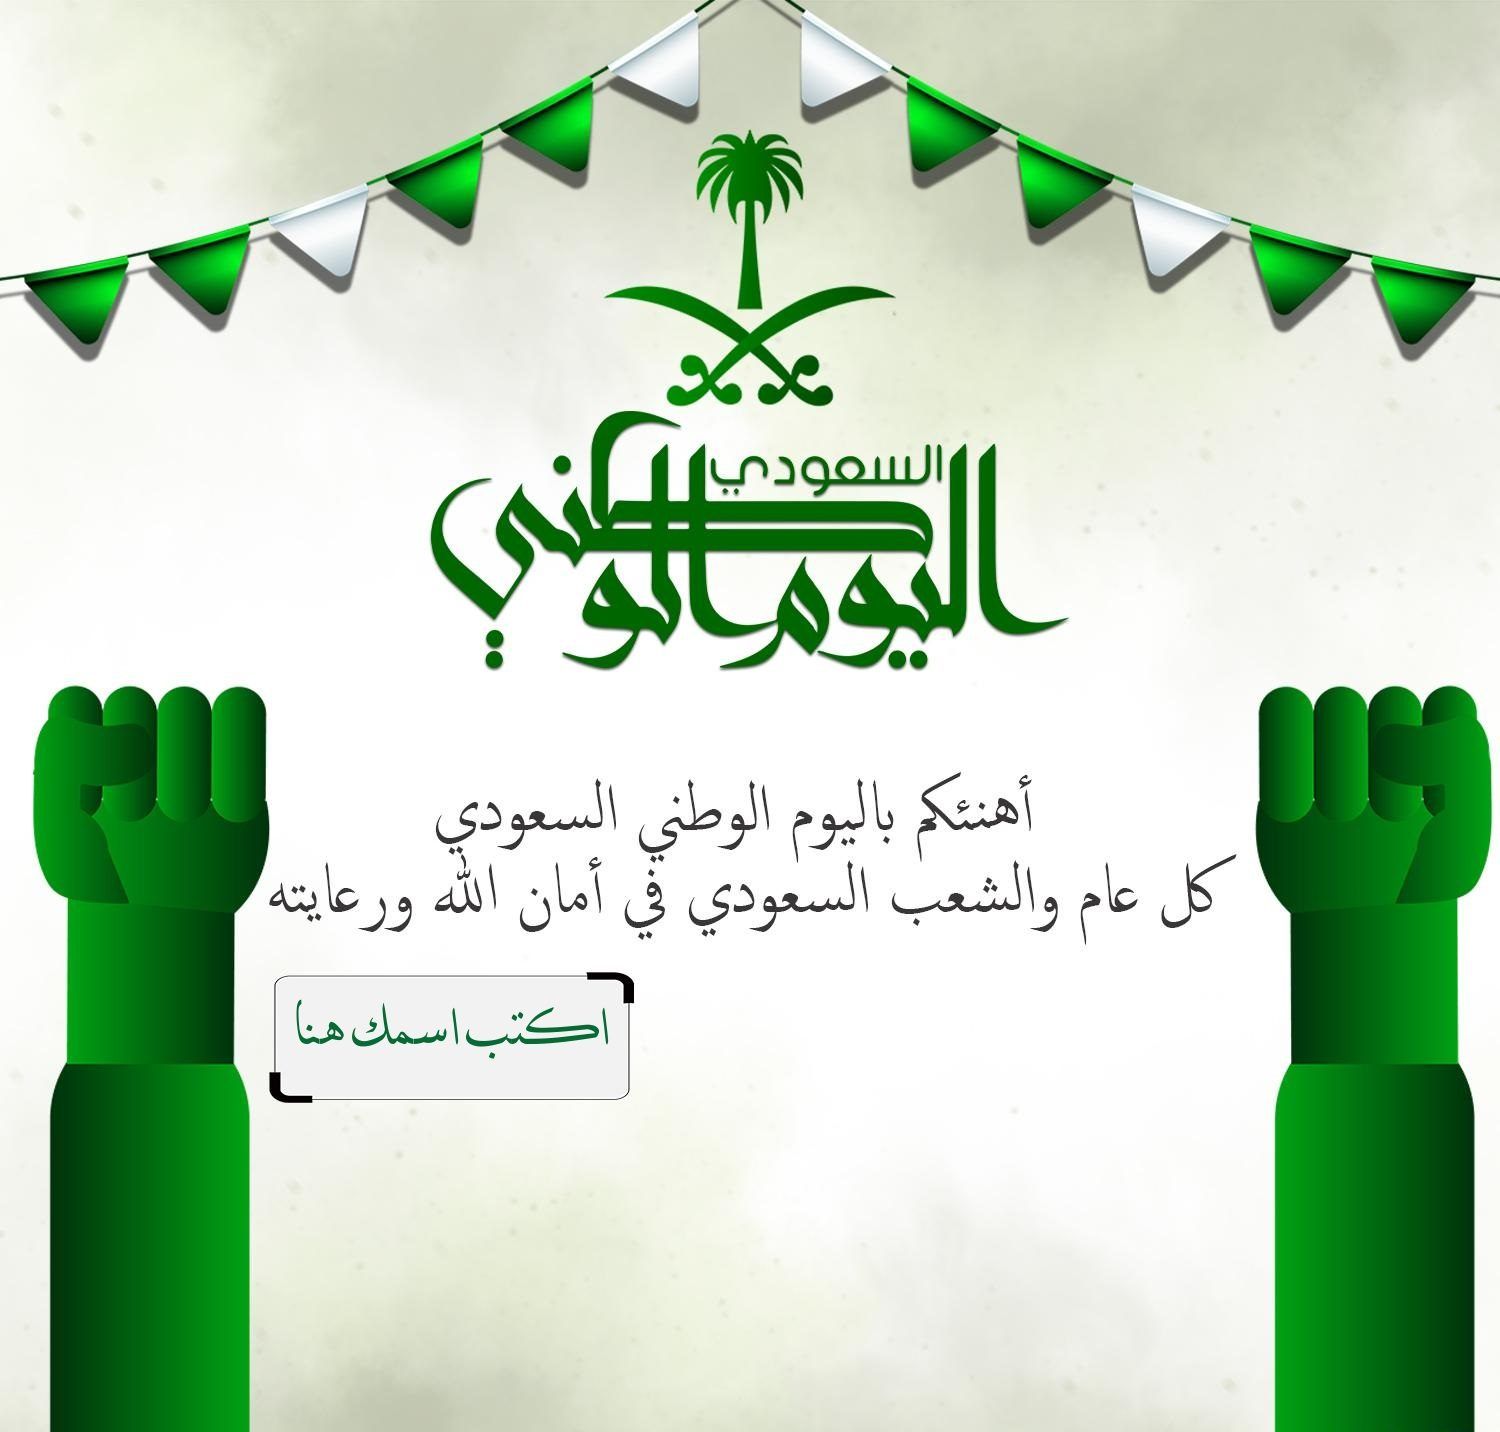 بطاقة تهنئة للوطن بمناسبة اليوم الوطني السعودي 92 أجمل عبارات عن اليوم  الوطني ومسجات مكتوبة وجاهزة للإرسال